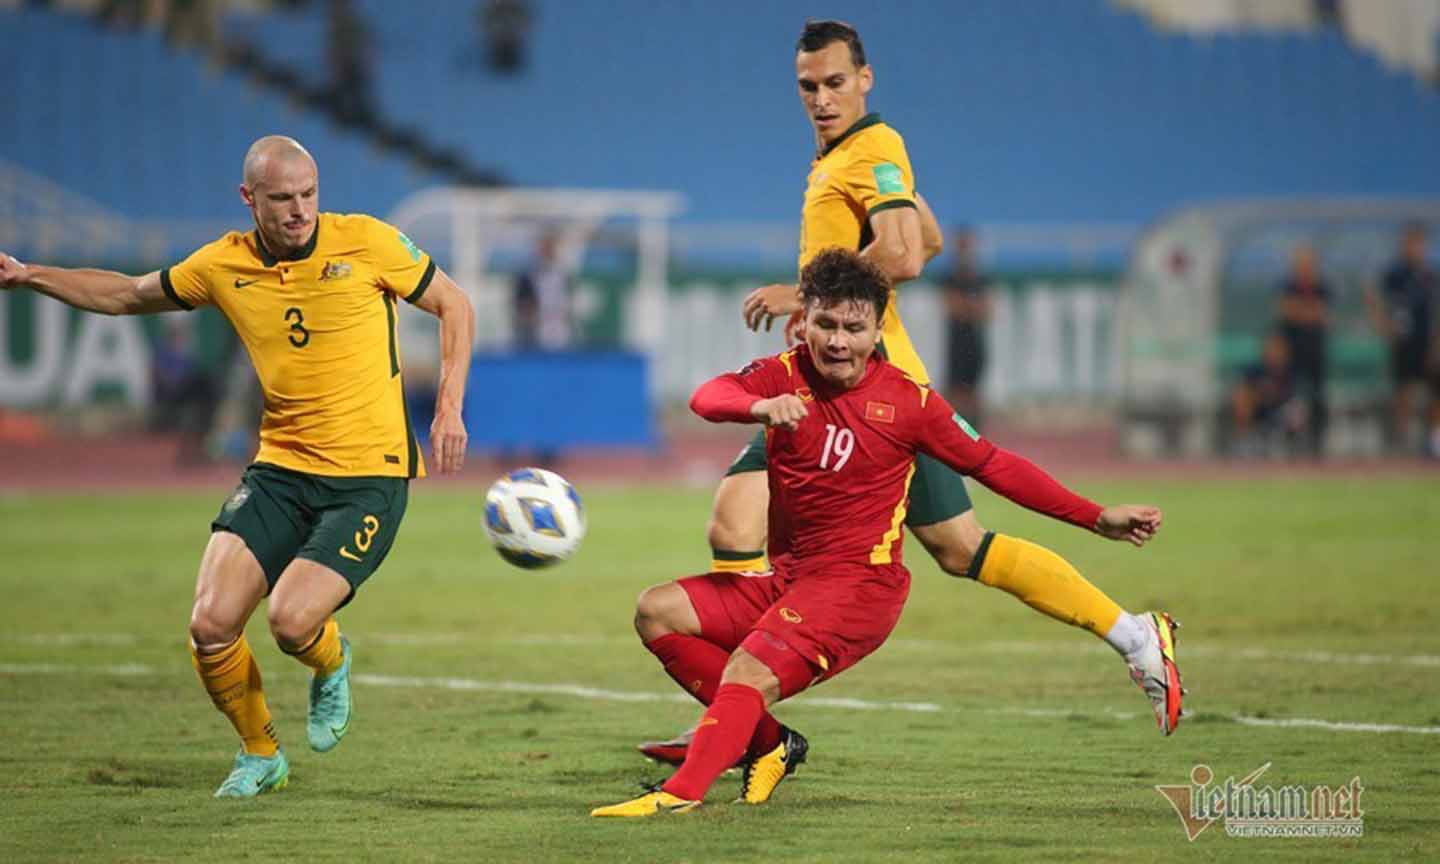 Đội tuyển Việt Nam có màn thể hiện tốt dù thất bại trước Australia với tỷ số sát nút 0-1. Ảnh: Vietnamnet.vn